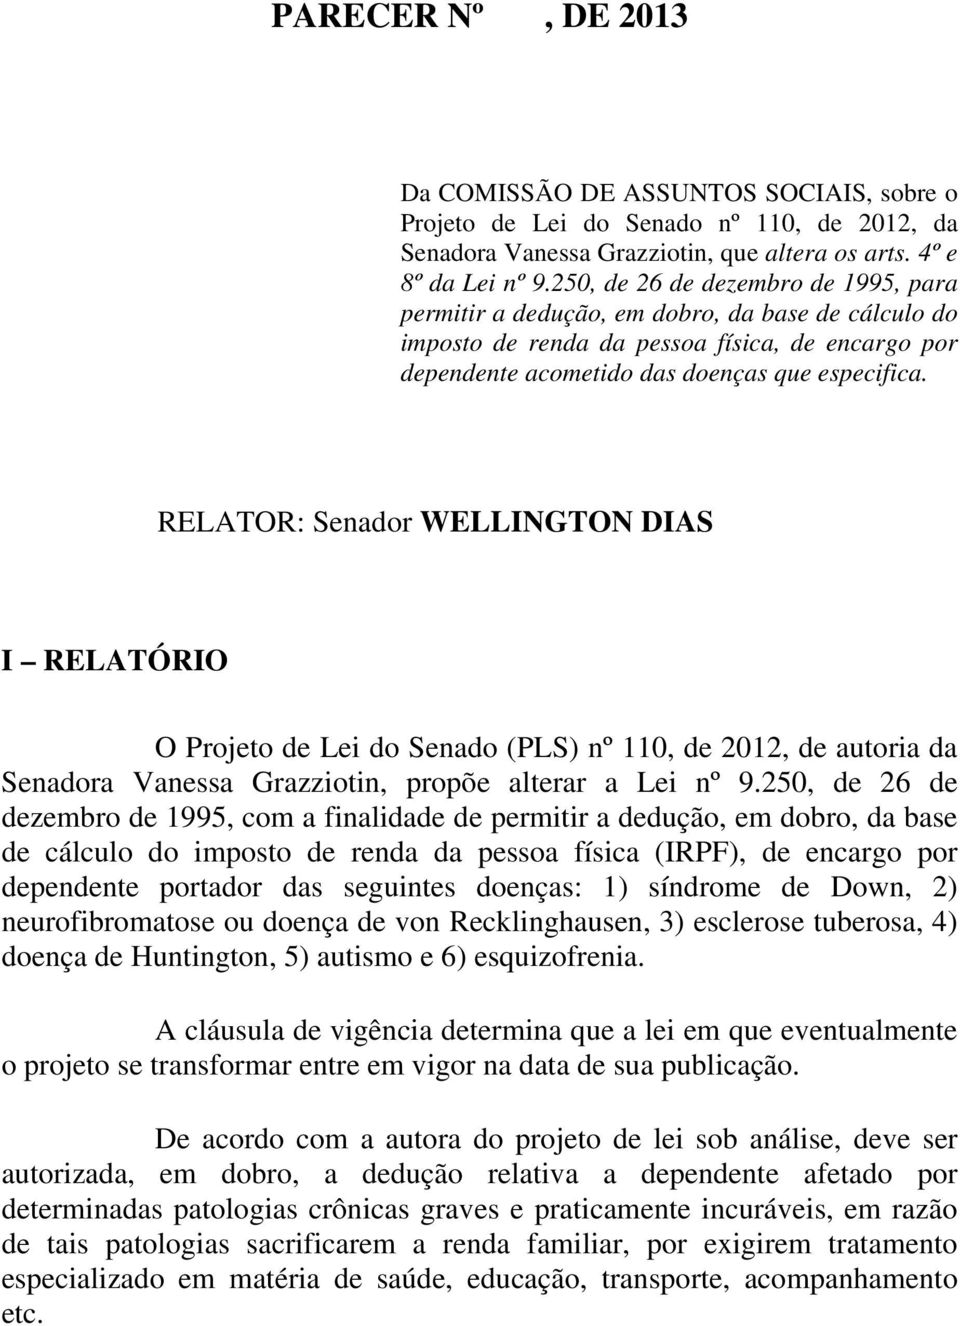 RELATOR: Senador WELLINGTON DIAS I RELATÓRIO O Projeto de Lei do Senado (PLS) nº 110, de 2012, de autoria da Senadora Vanessa Grazziotin, propõe alterar a Lei nº 9.